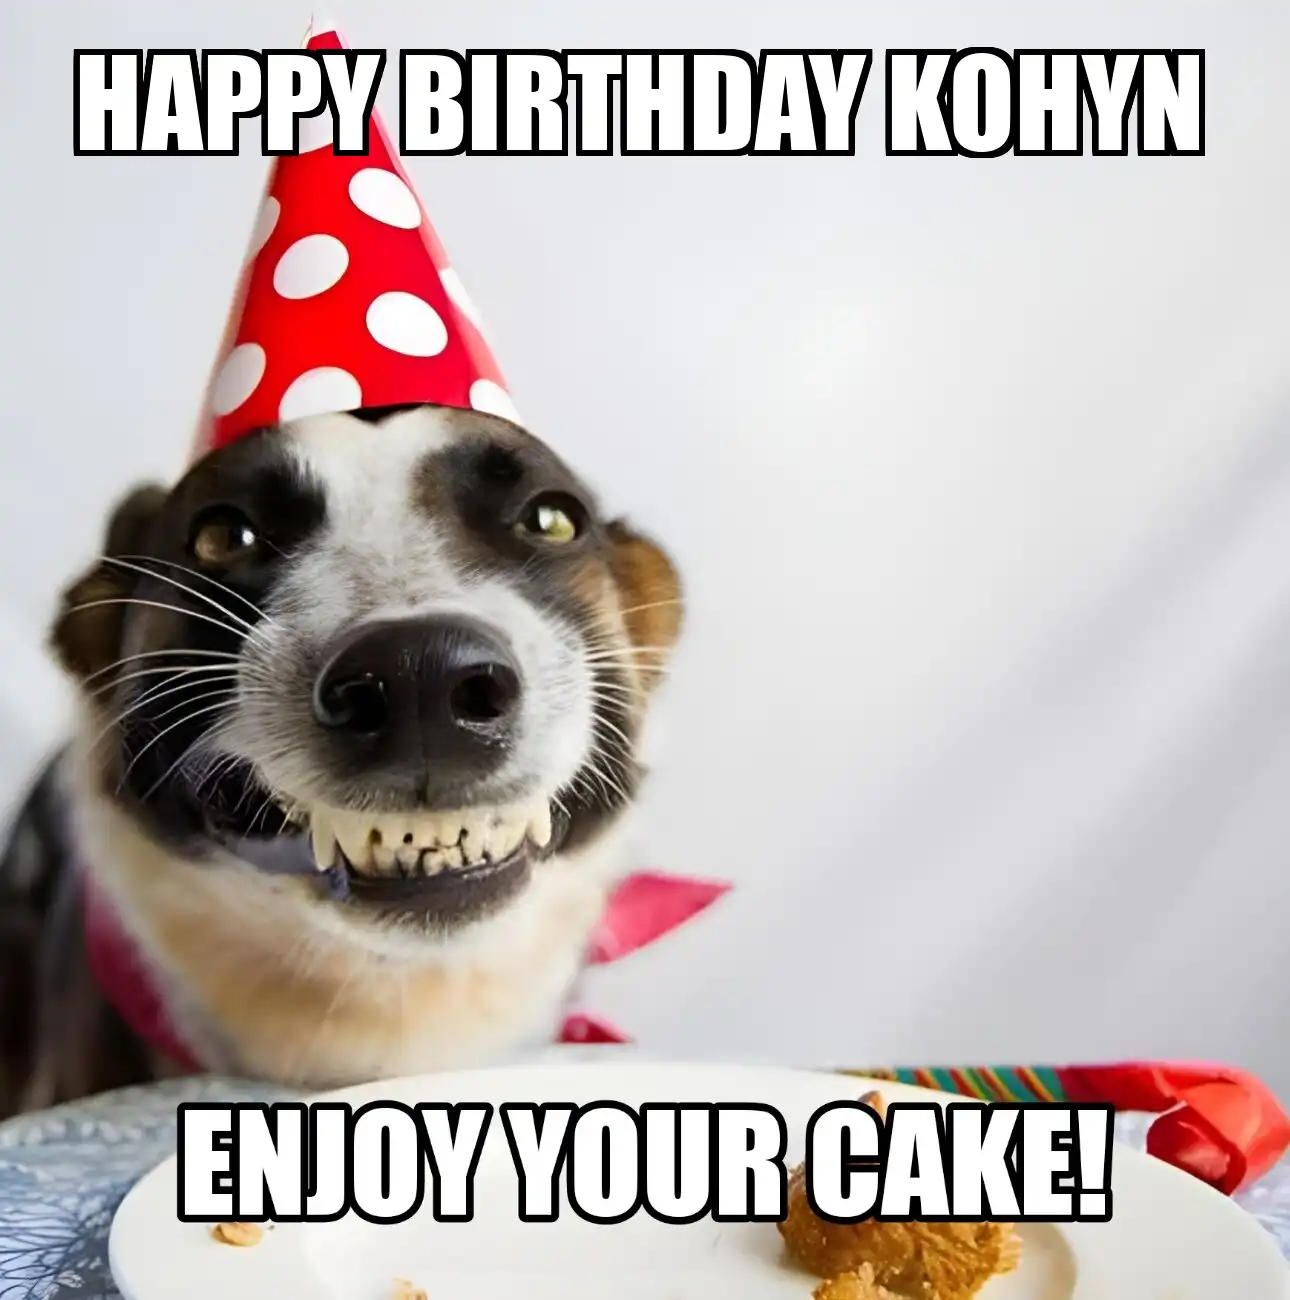 Happy Birthday Kohyn Enjoy Your Cake Dog Meme